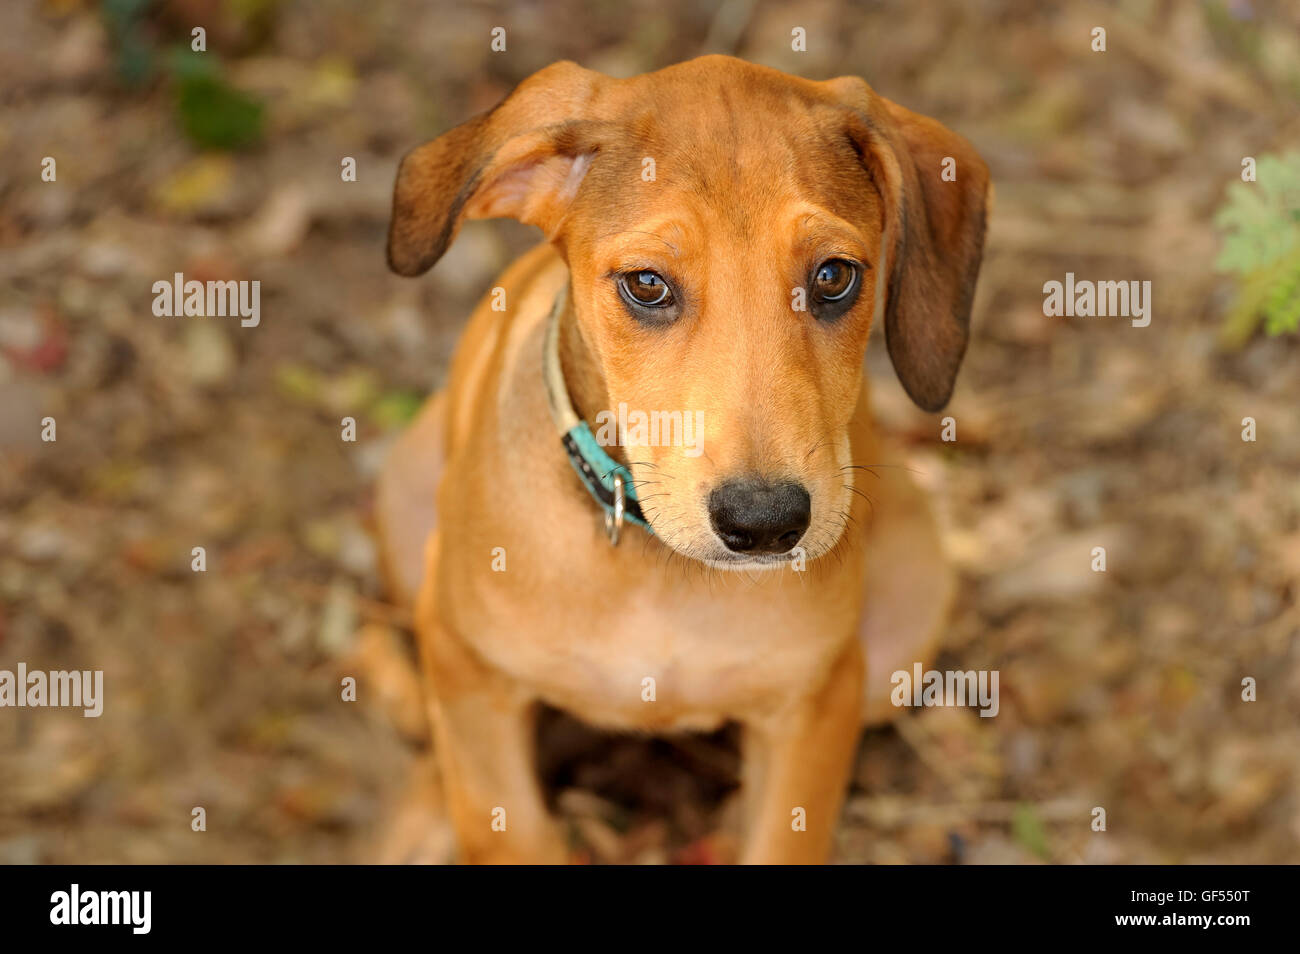 Lindo perro es un cachorro adorable dulce mirando hacia arriba con la oreja doblada a un lado y su Big Brown hermosos ojos llenos de asombro. Foto de stock